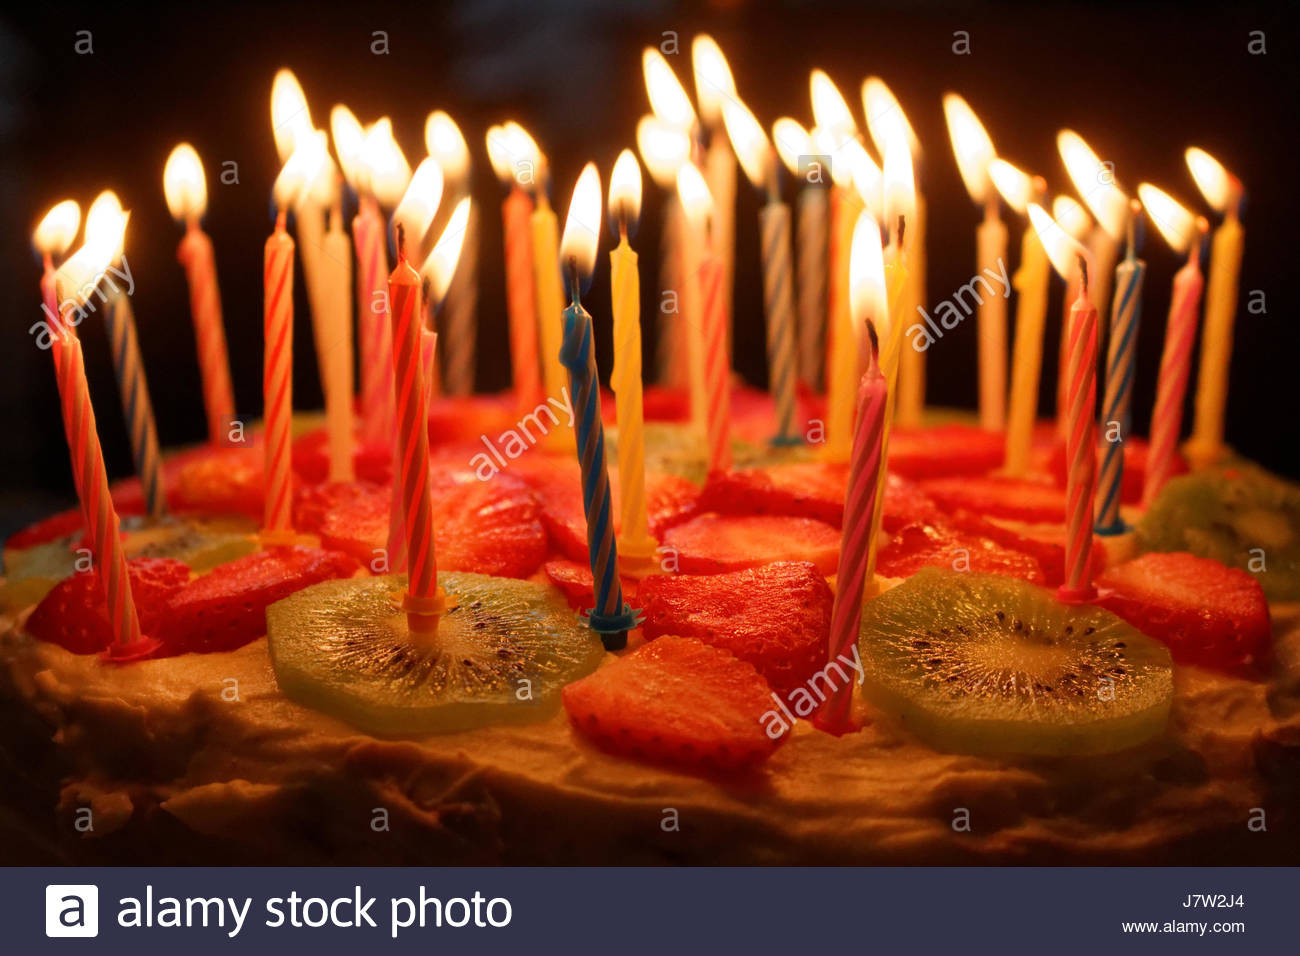 Geburtstagstorte Mit Kerzen
 Geburtstagstorte mit brennenden Kerzen auf einem dunklen